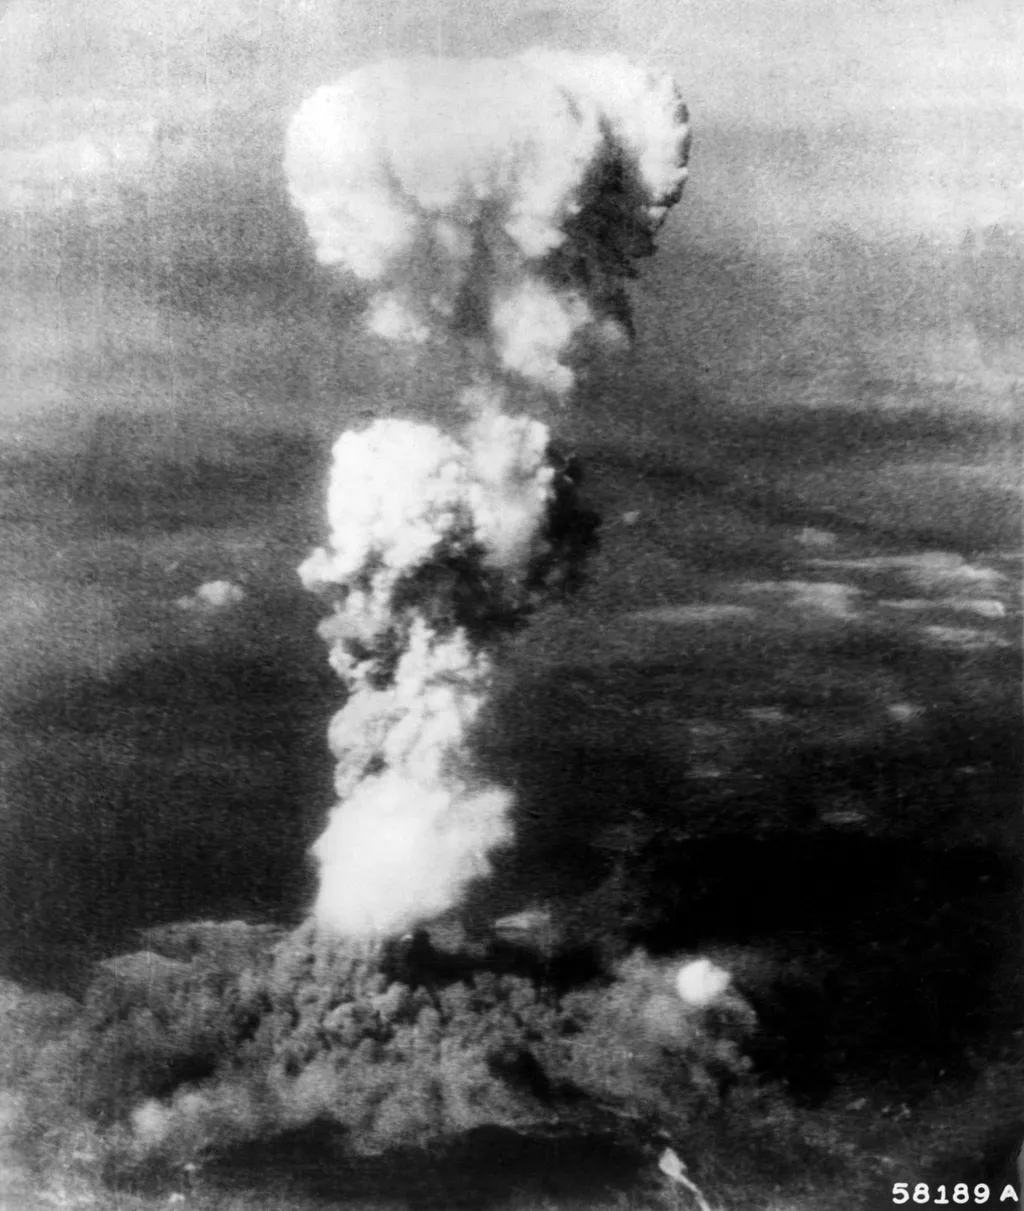 HIROSHIMA ELEONORE 58189A carré Vertical BOMBE ATOMIQUE EXPLOSION CHAMPIGNON ATOMIQUE SECONDE GUERRE MONDIALE HAUTEUR 